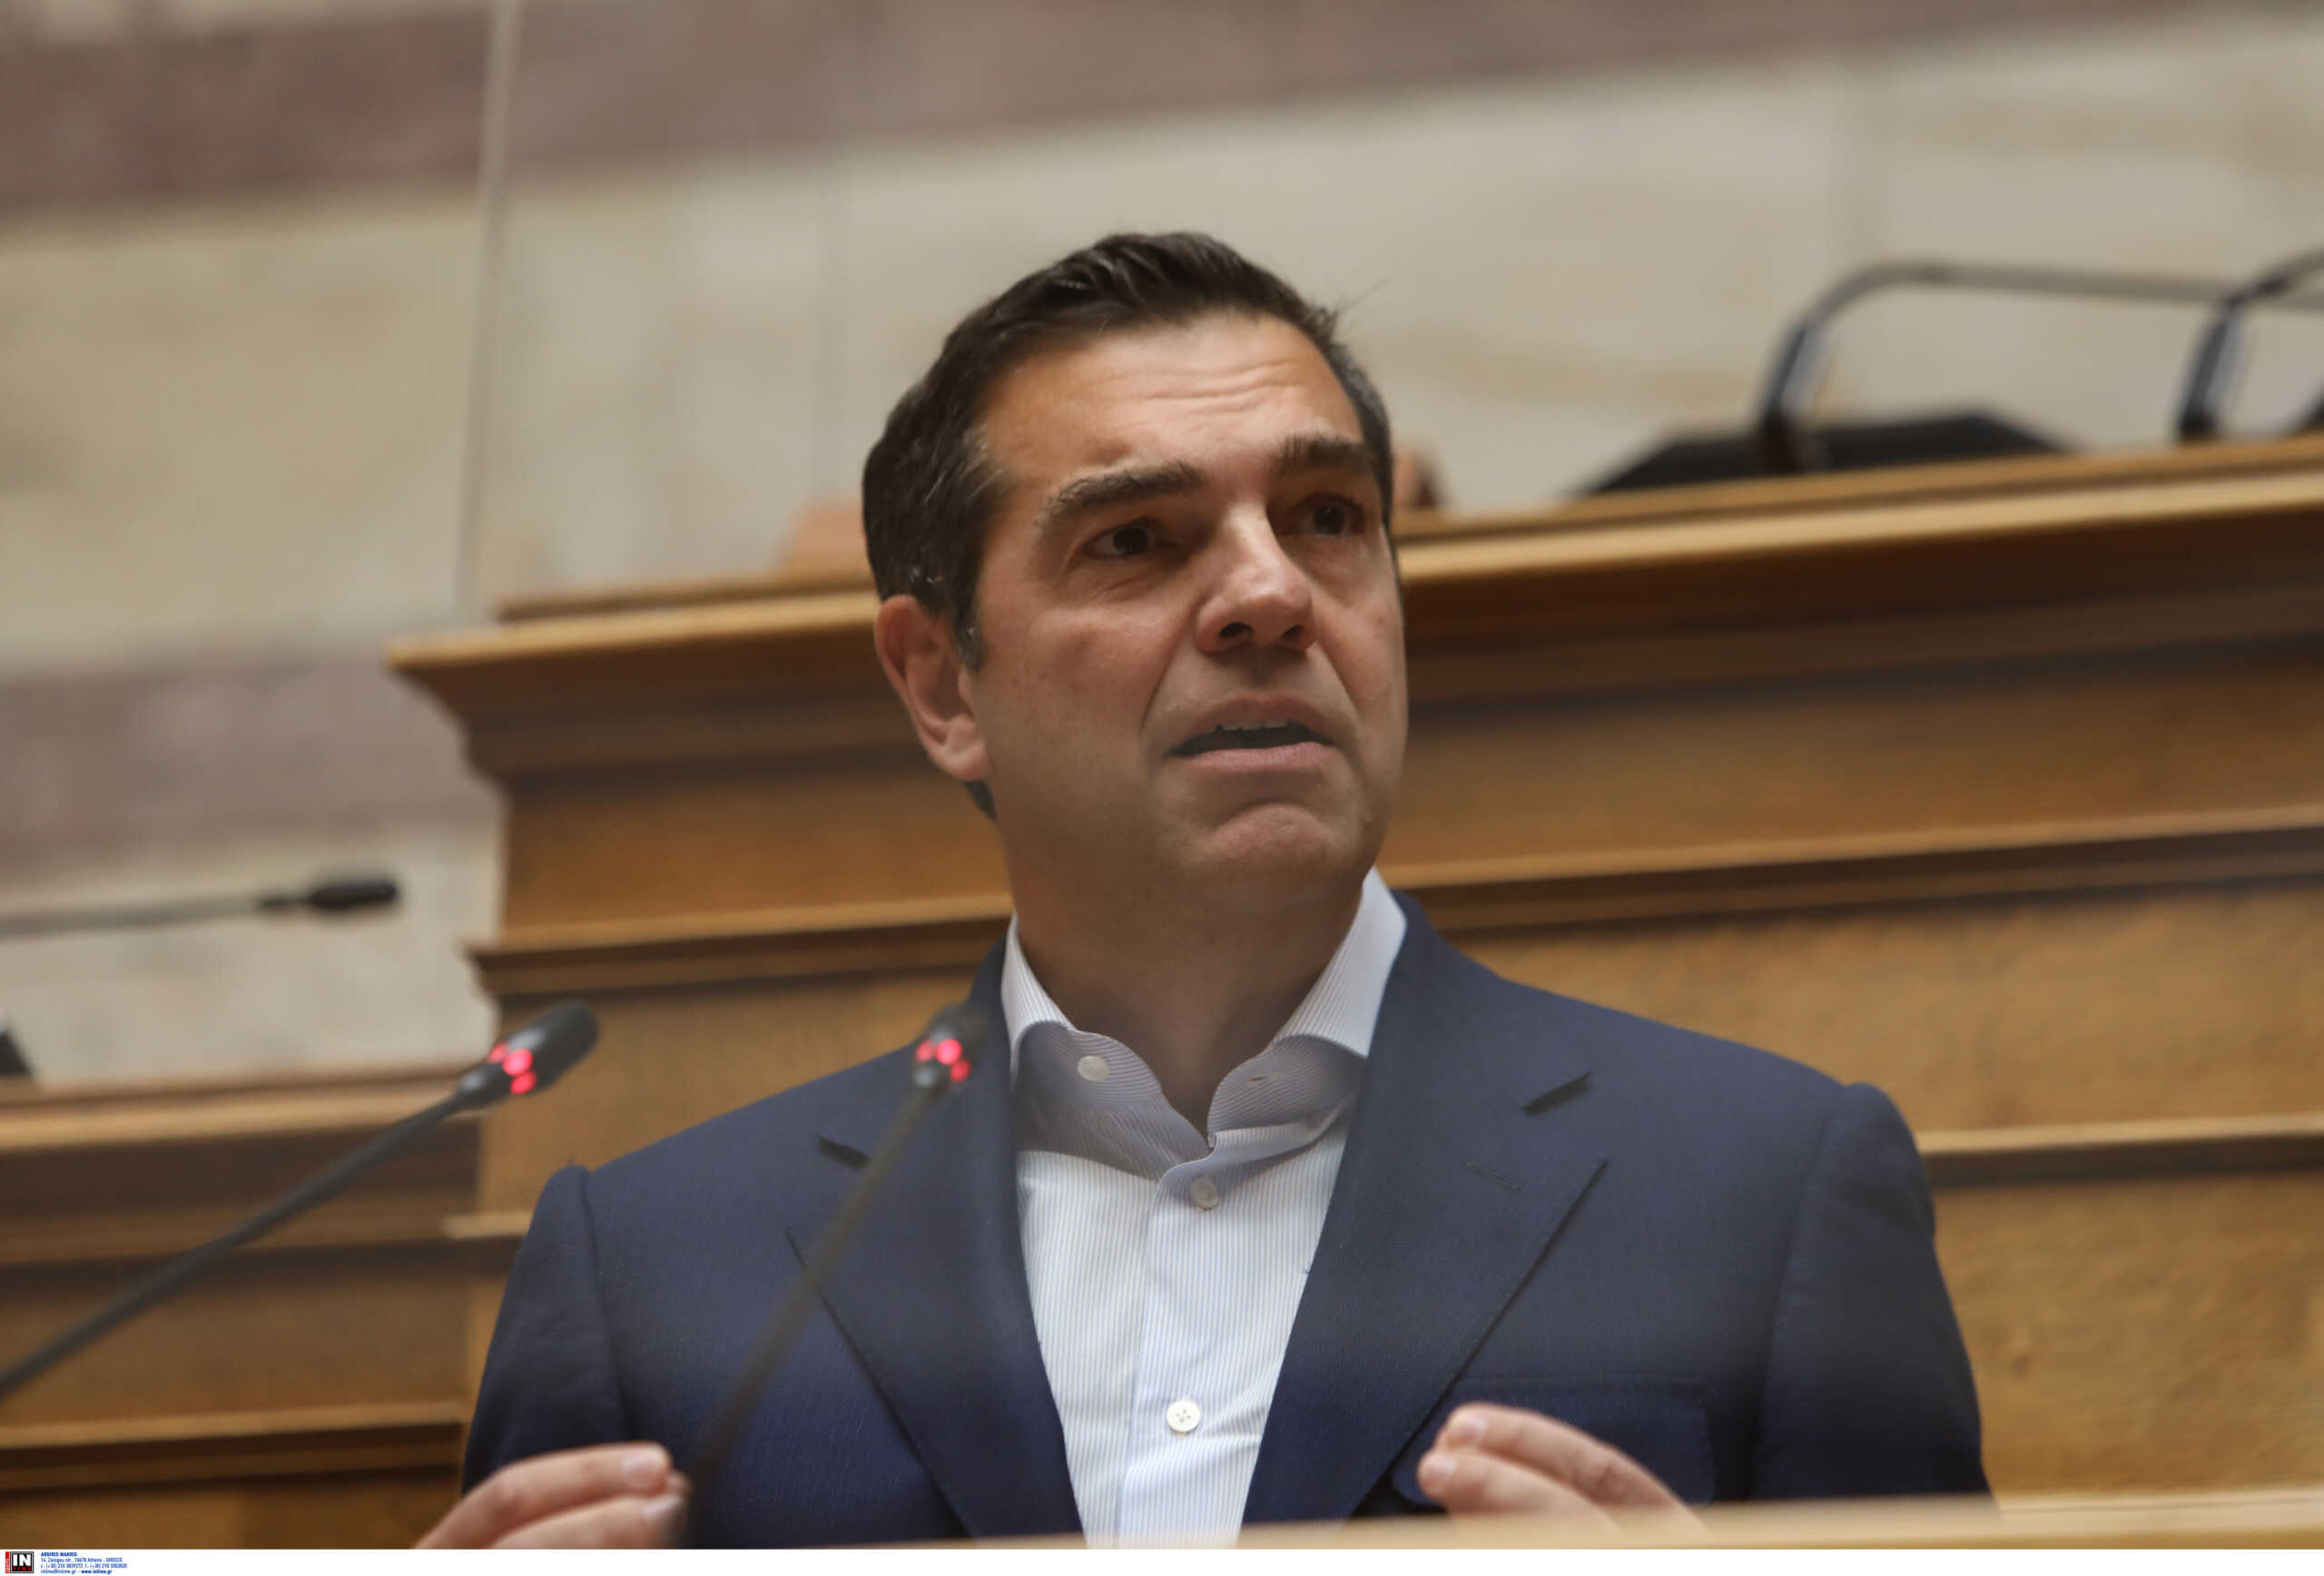 ΣΥΡΙΖΑ: Δεν θα αφήσουμε την κυβέρνηση να κάνει το σύνταγμα κουρελόχαρτο